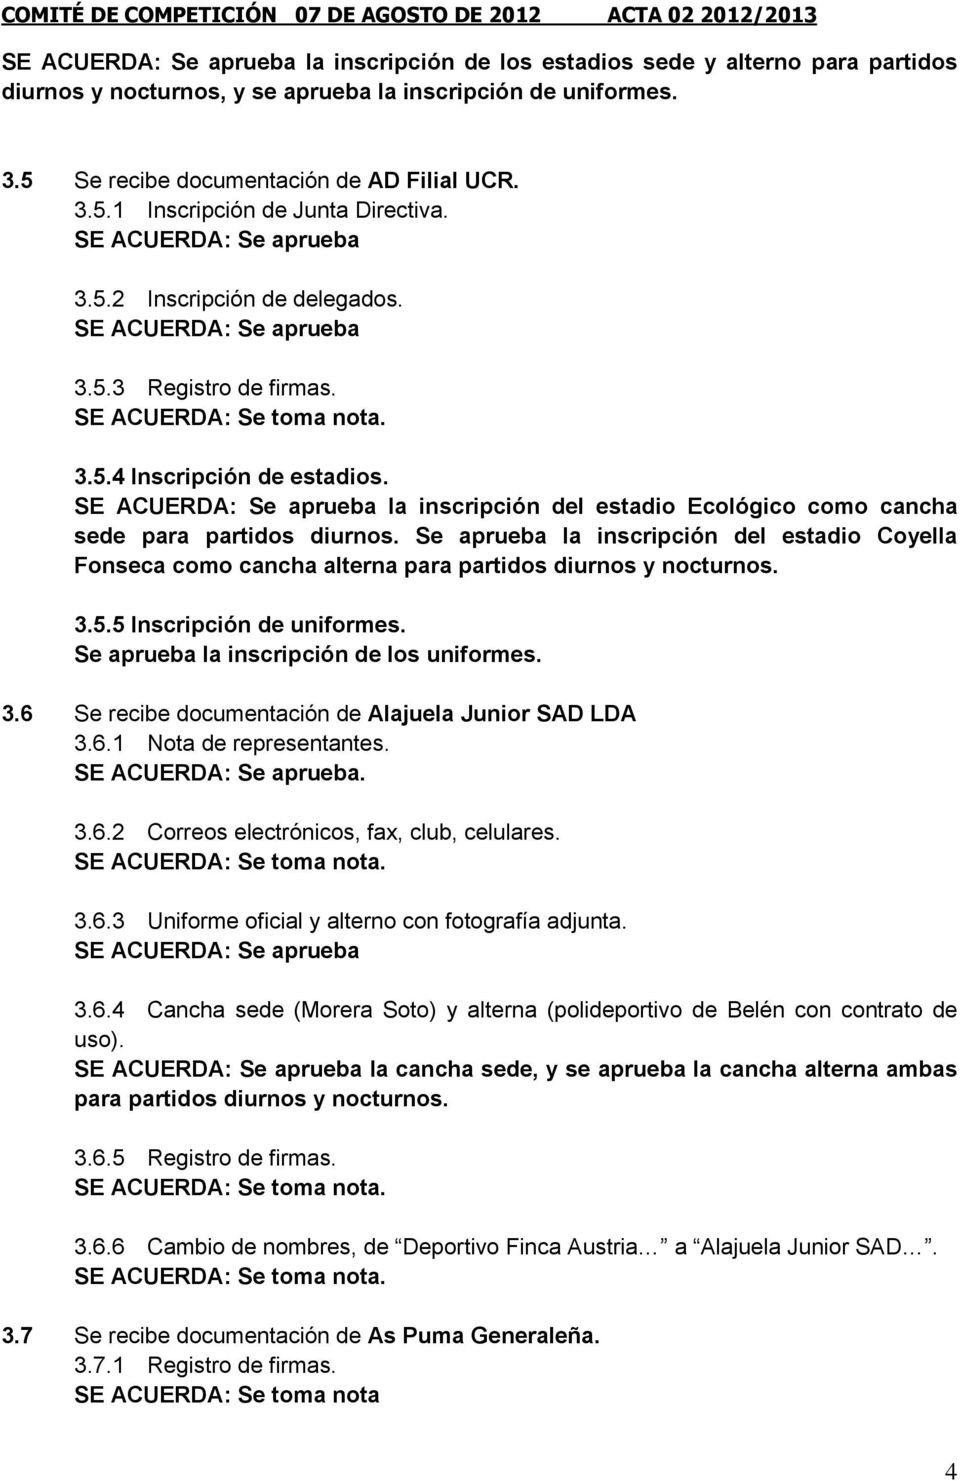 Se aprueba la inscripción del estadio Coyella Fonseca como cancha alterna para partidos diurnos y nocturnos. 3.5.5 Inscripción de uniformes. Se aprueba la inscripción de los uniformes. 3.6 Se recibe documentación de Alajuela Junior SAD LDA 3.